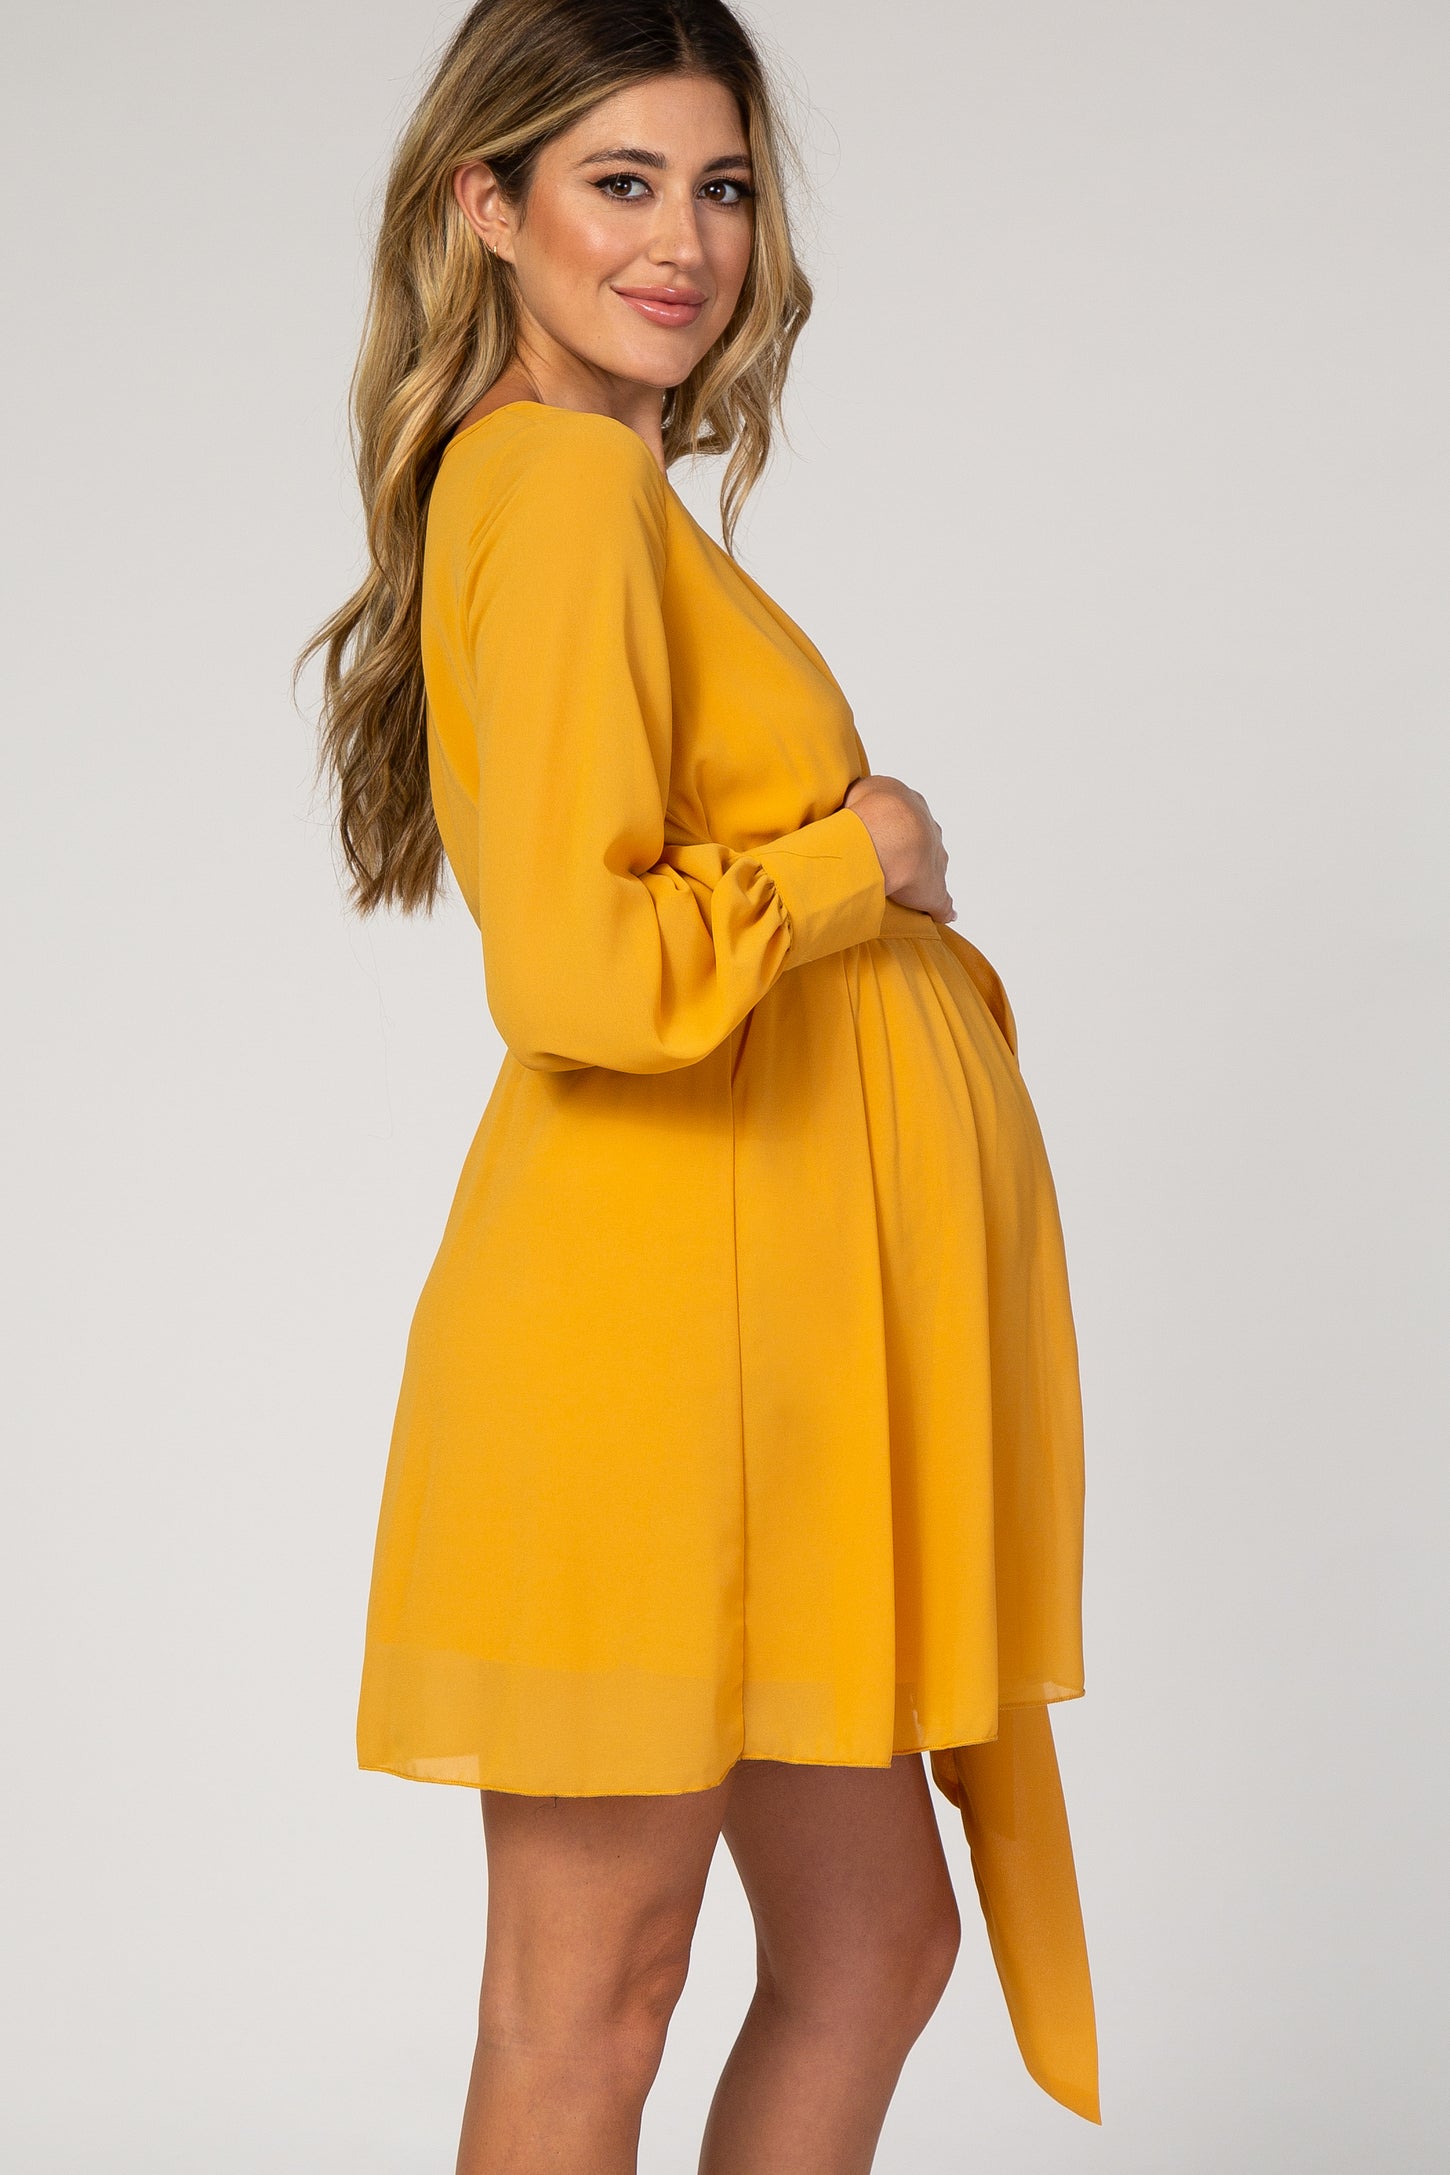 Yellow Chiffon Maternity Wrap Dress– PinkBlush